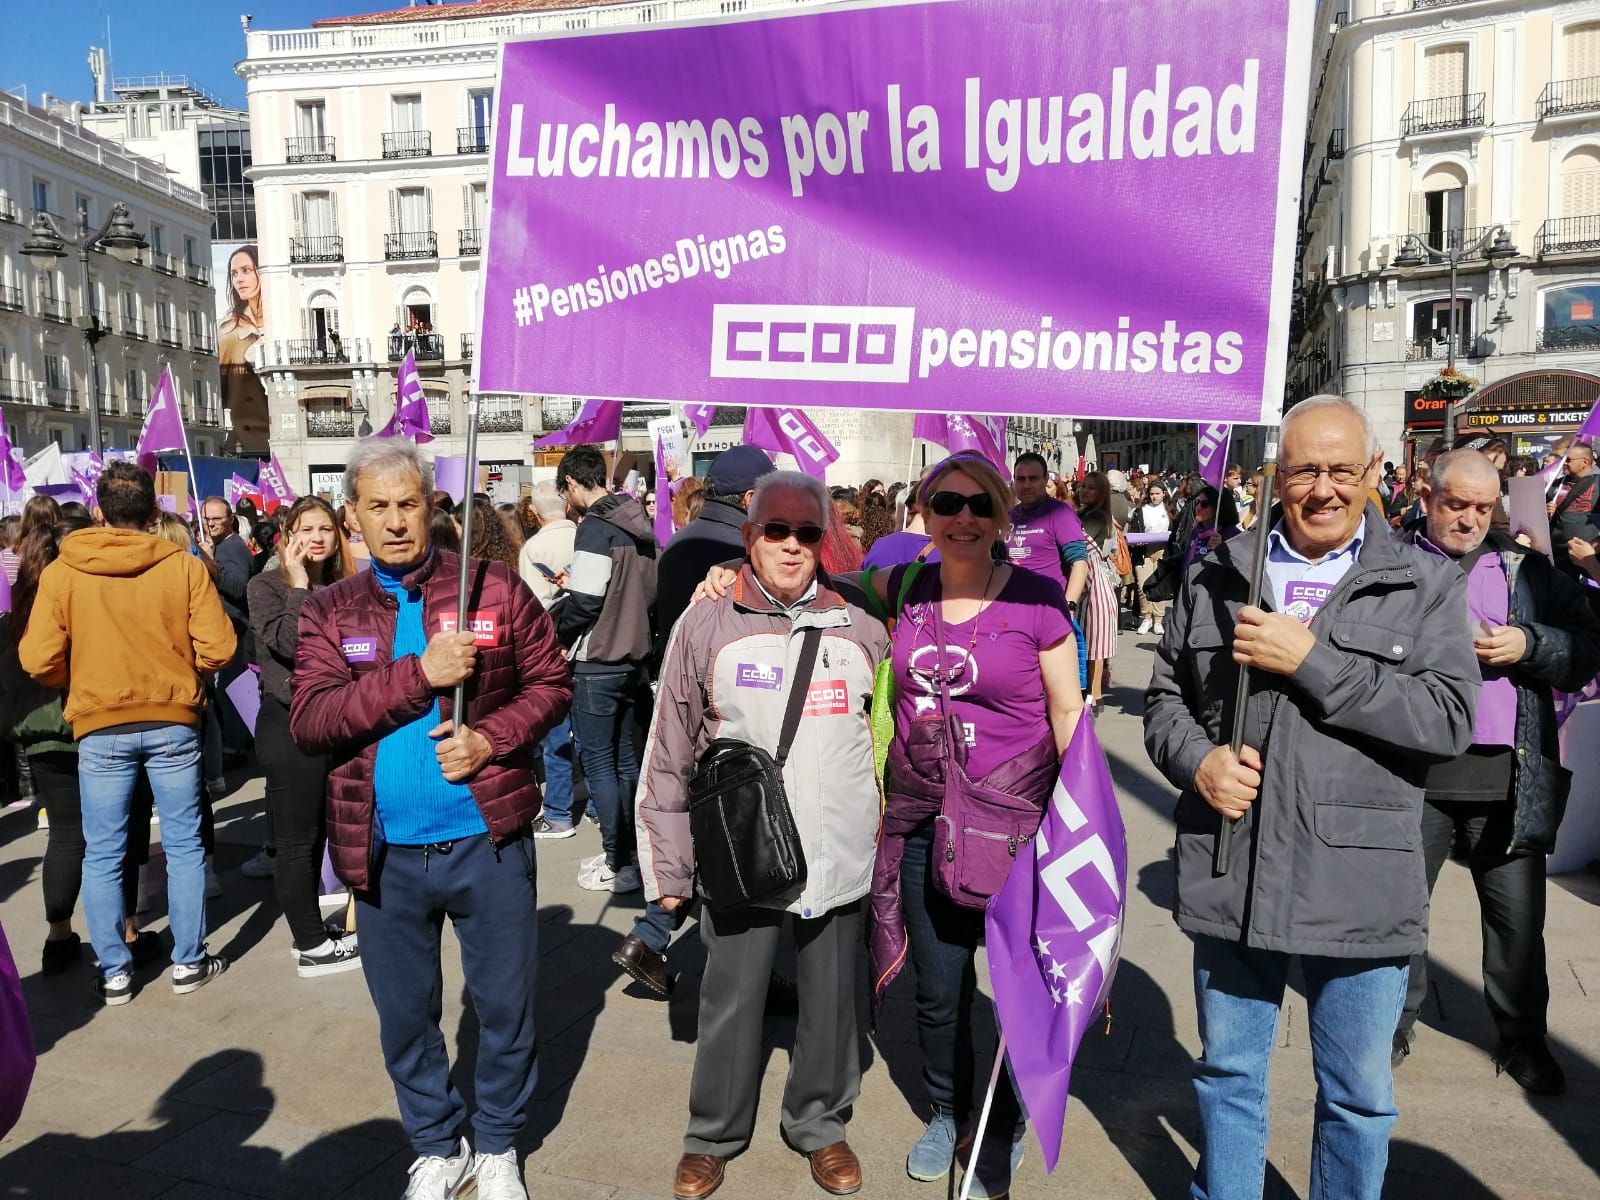 Juan Sepúlveda: "Viabilidad de las pensiones actuales y futuras"